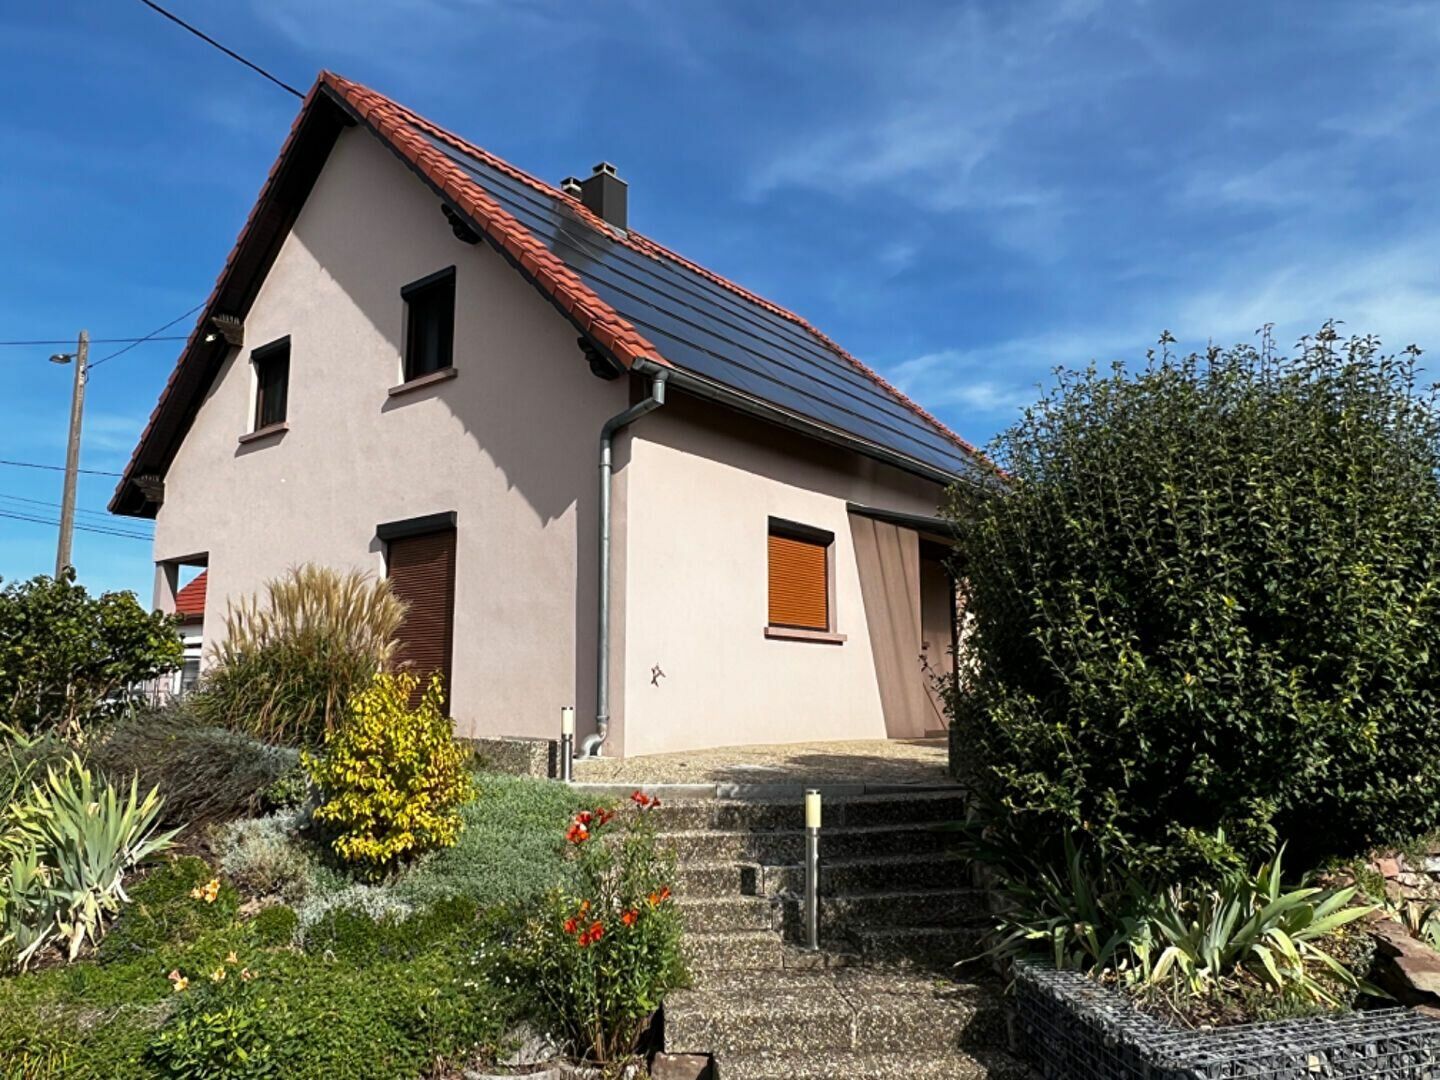 Maison à vendre 5 150m2 à Weckolsheim vignette-10